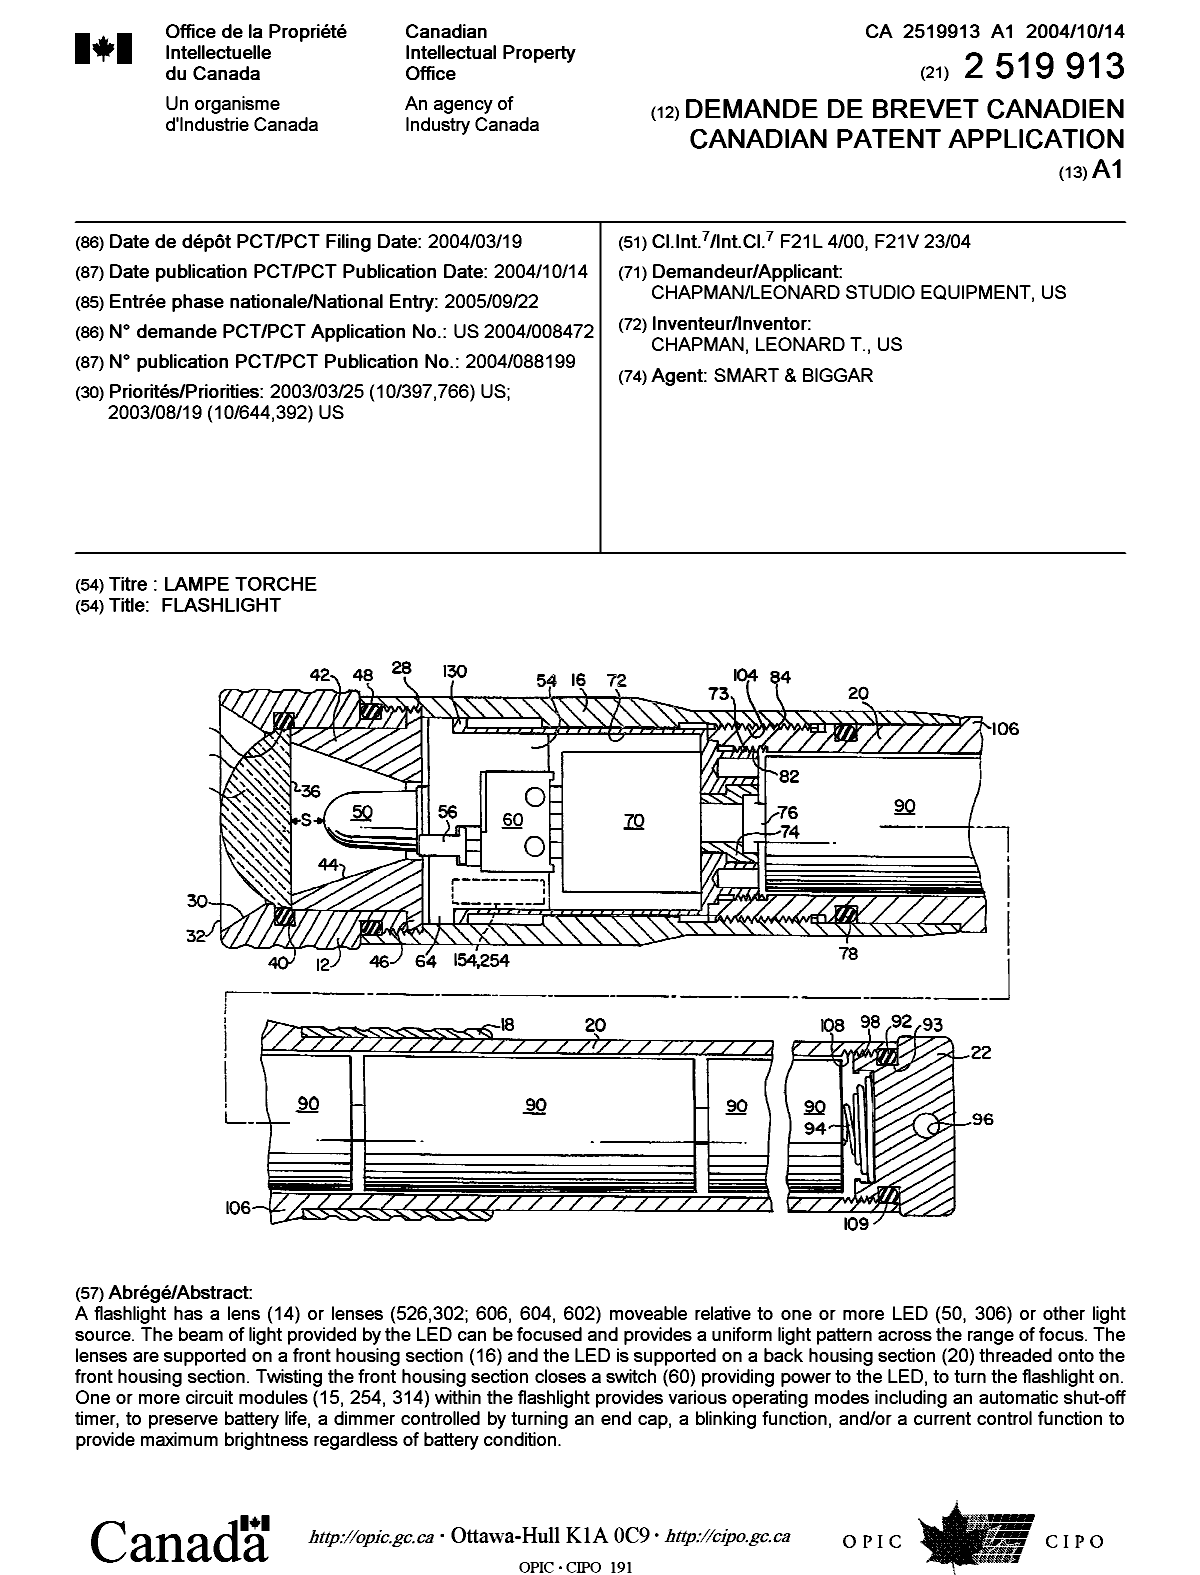 Document de brevet canadien 2519913. Page couverture 20051121. Image 1 de 1